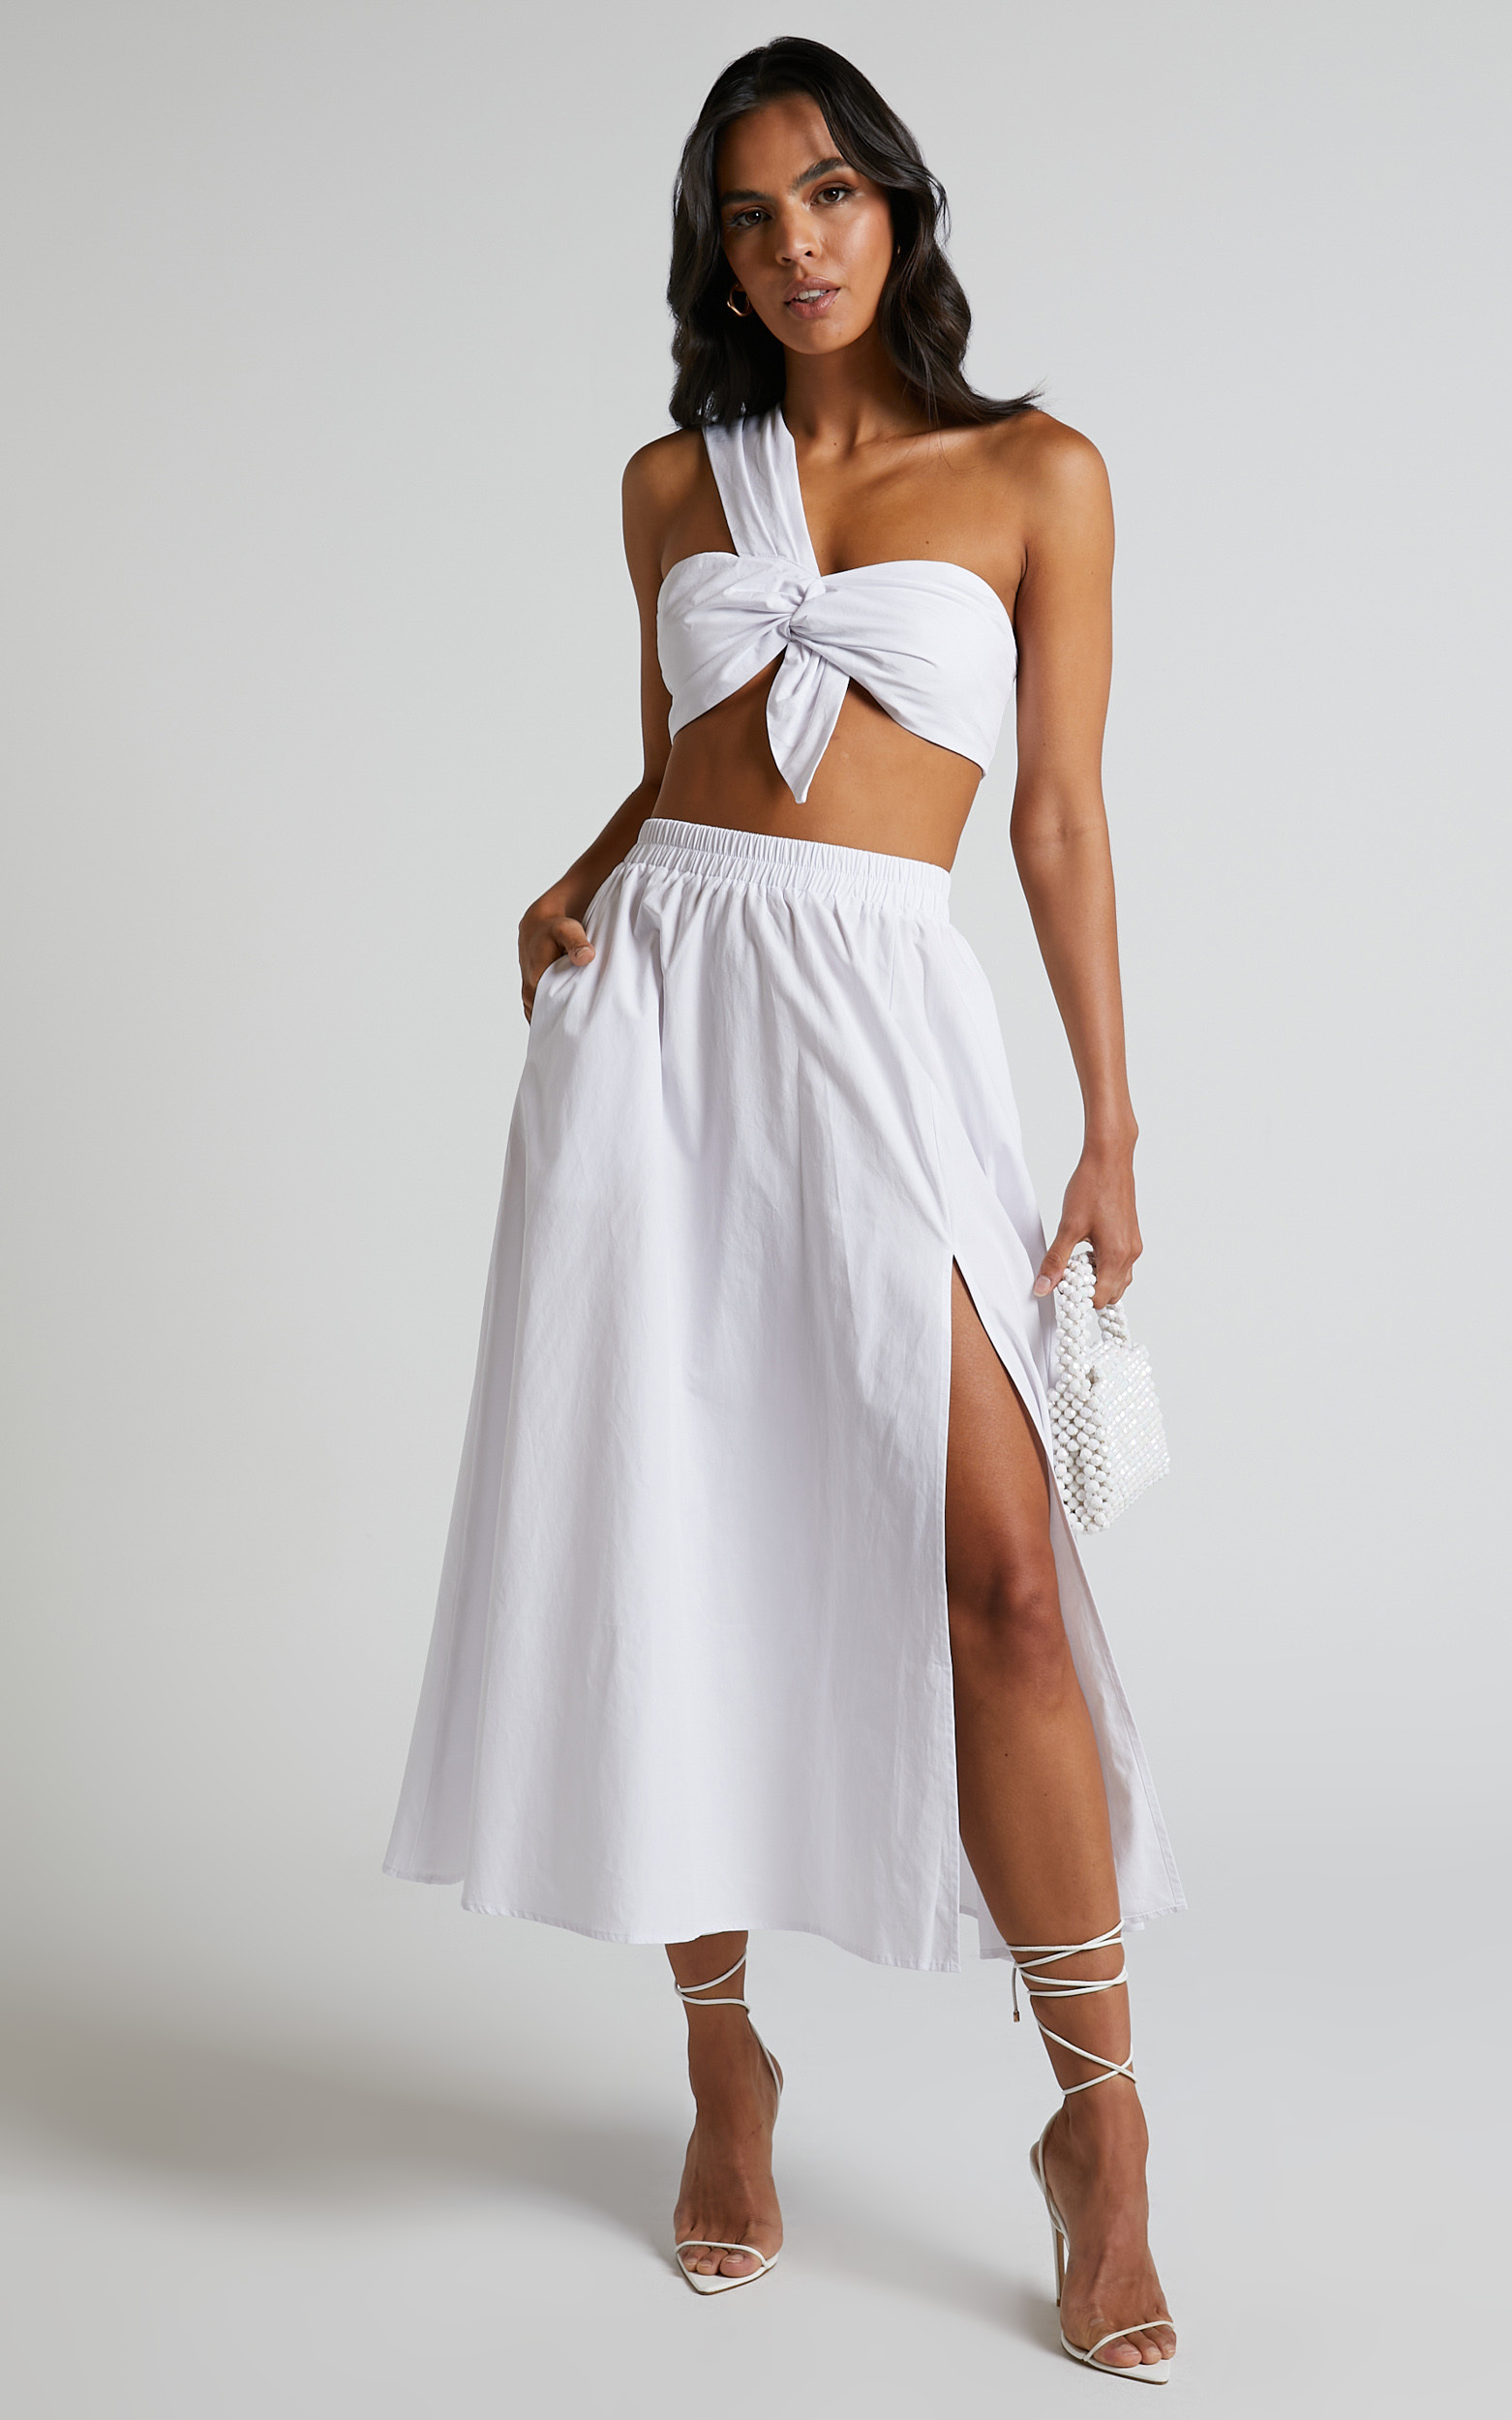 udgifterne øjenvipper Om indstilling Sula Two Piece Set - One Shoulder Bralette Crop Top and Midi Skirt in White  | Showpo USA